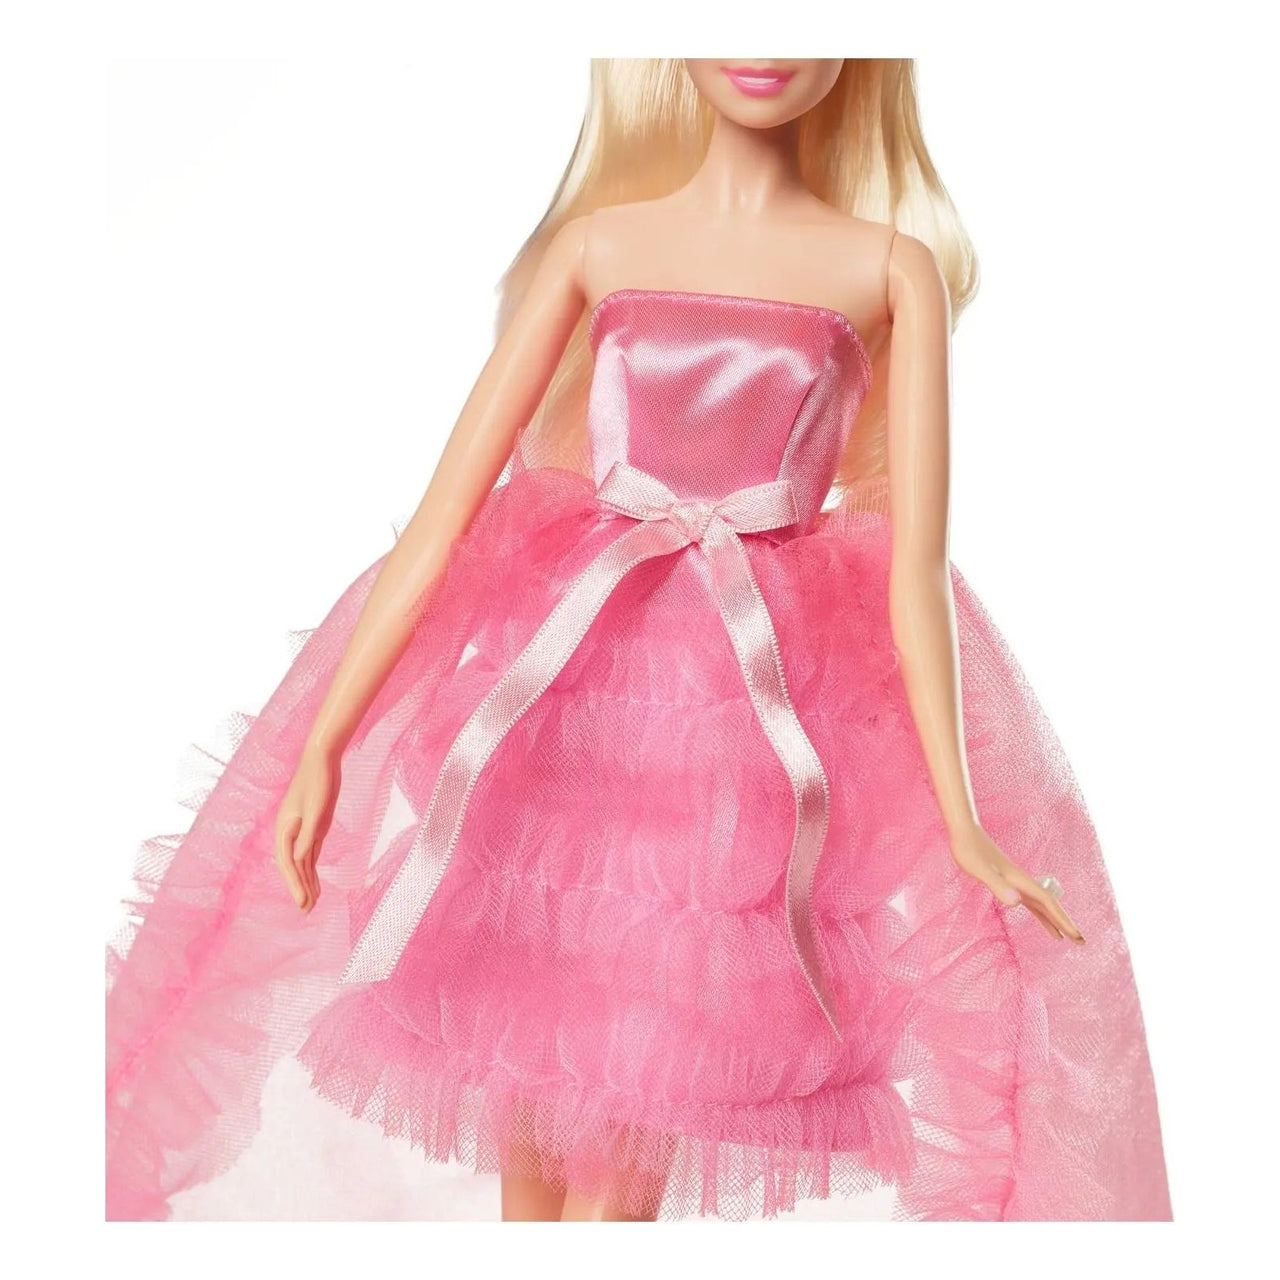 Barbie Birthday Wishes Doll Barbie